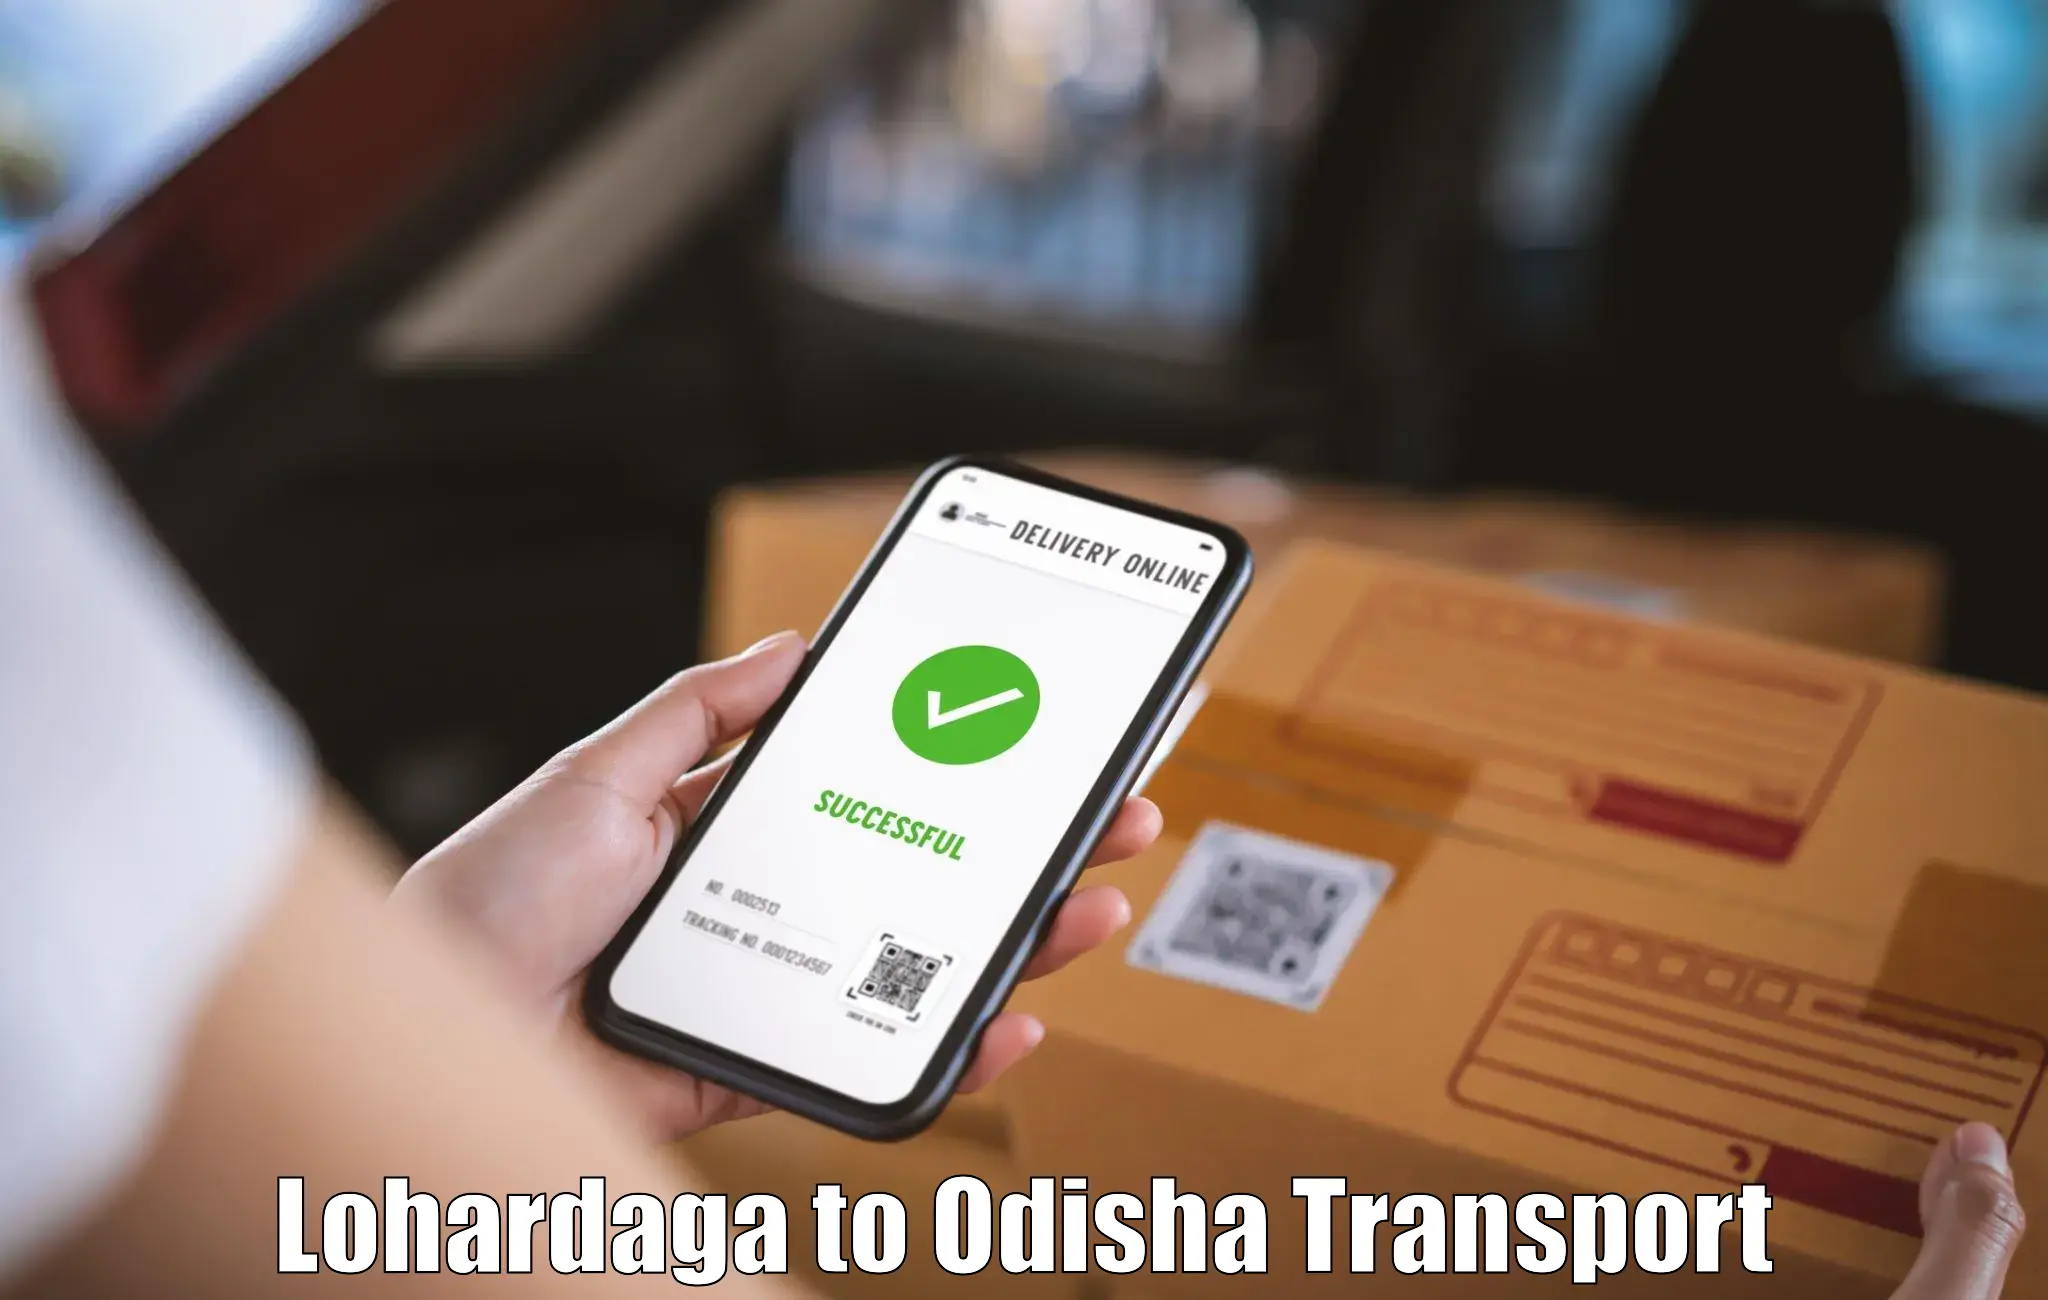 Transport in sharing Lohardaga to Basta